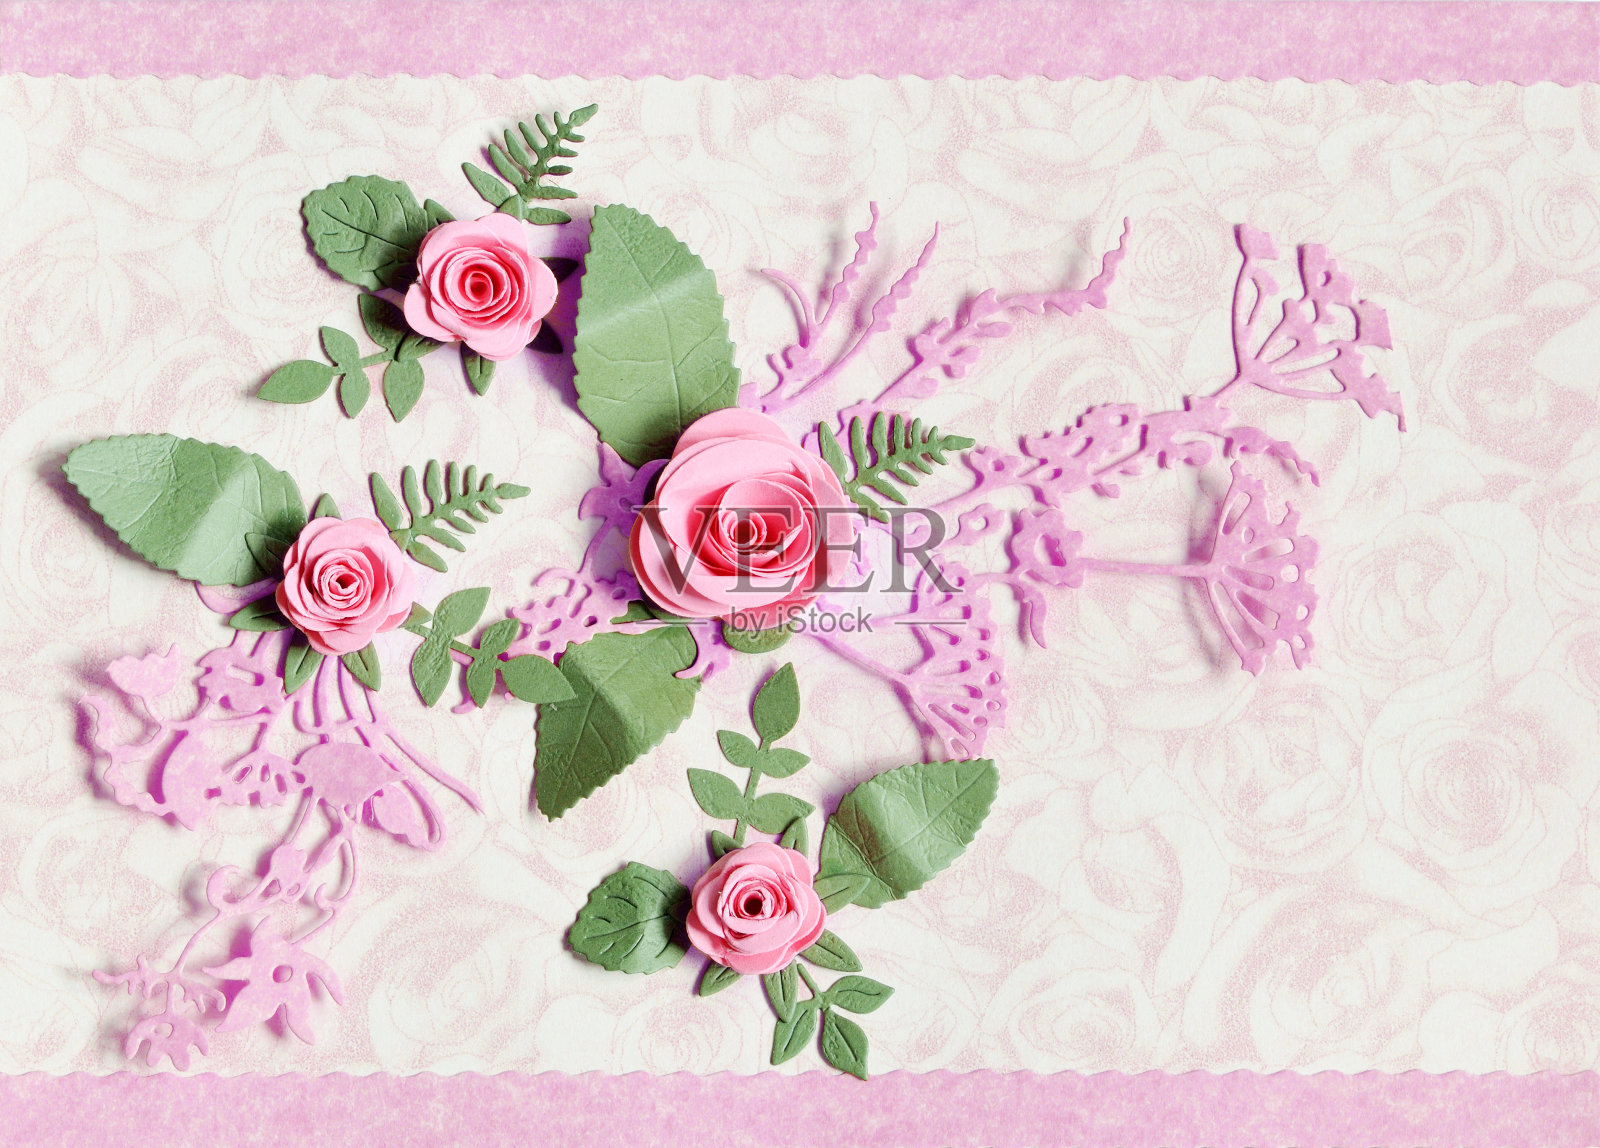 装饰纸卡片与玫瑰和树叶设计模板素材